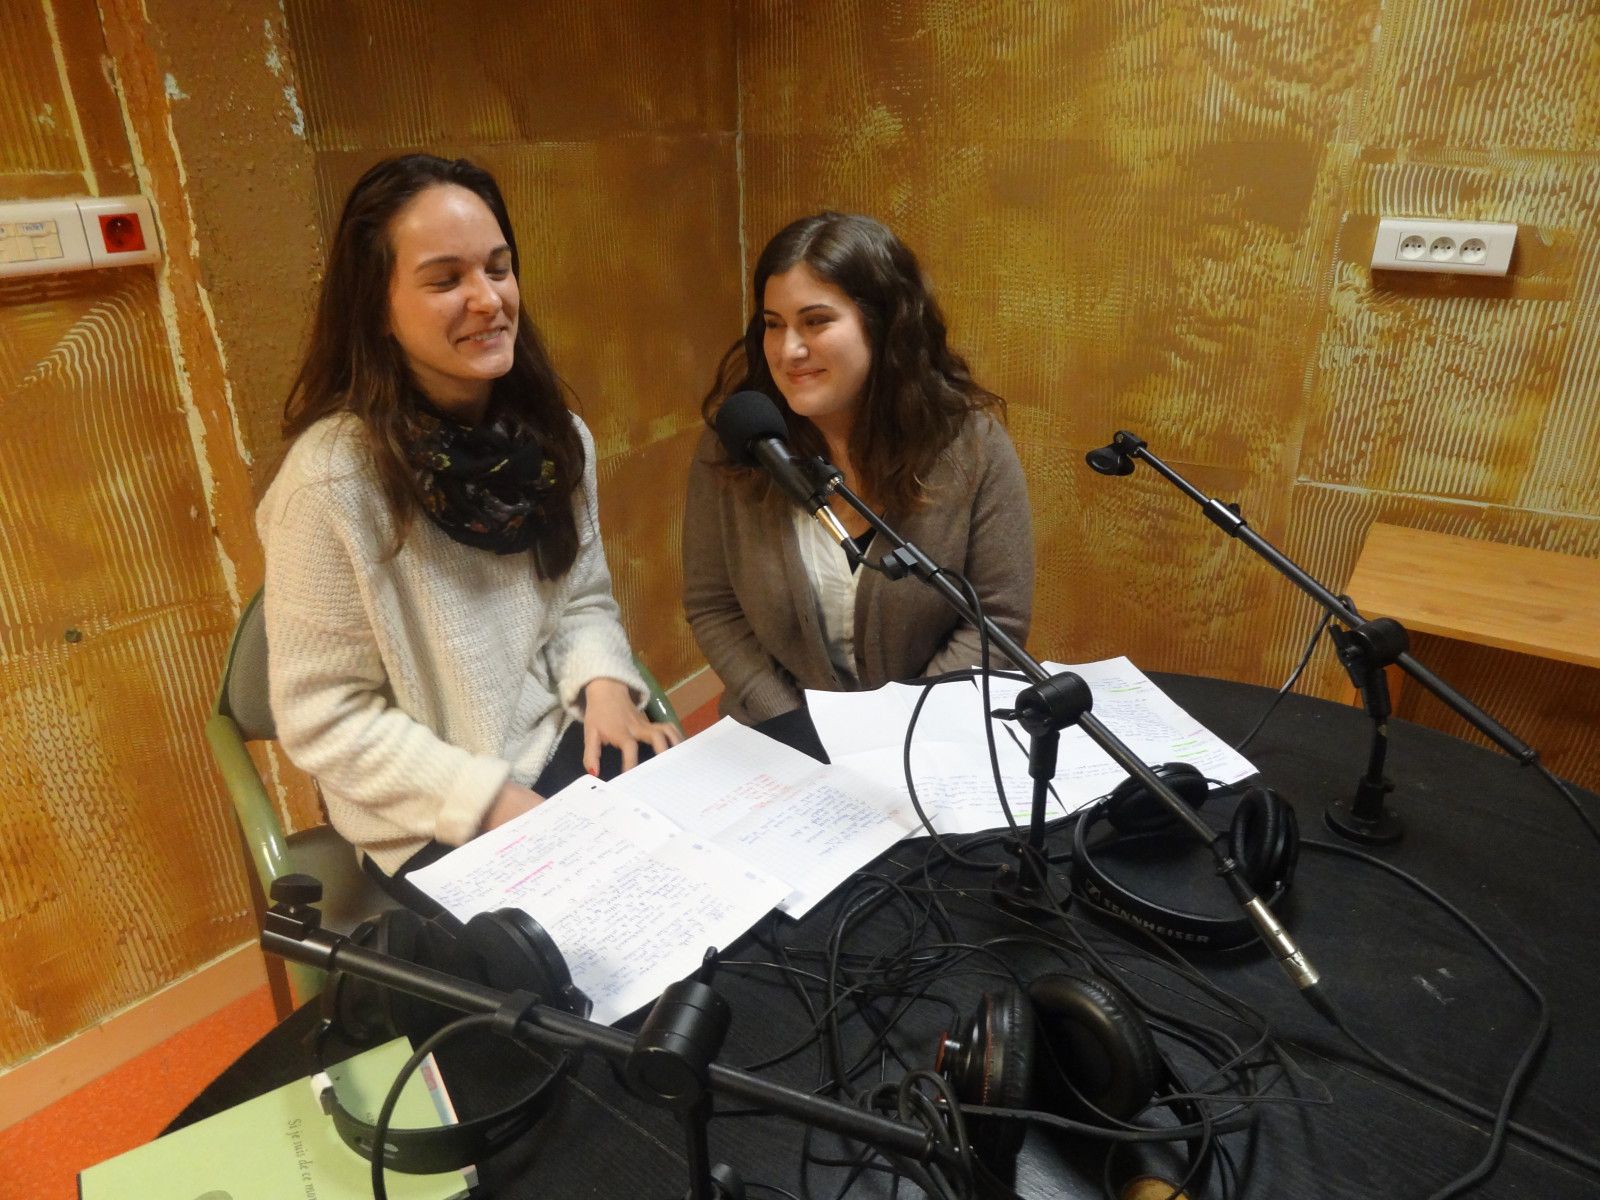 Samedi 1er mars 2014,  de 14 h à 15 heures 30, sur Fréquence Mutine, les lycéens d'i-voix ont conçu et animé en direct une émission entièrement consacrée à leur projet...